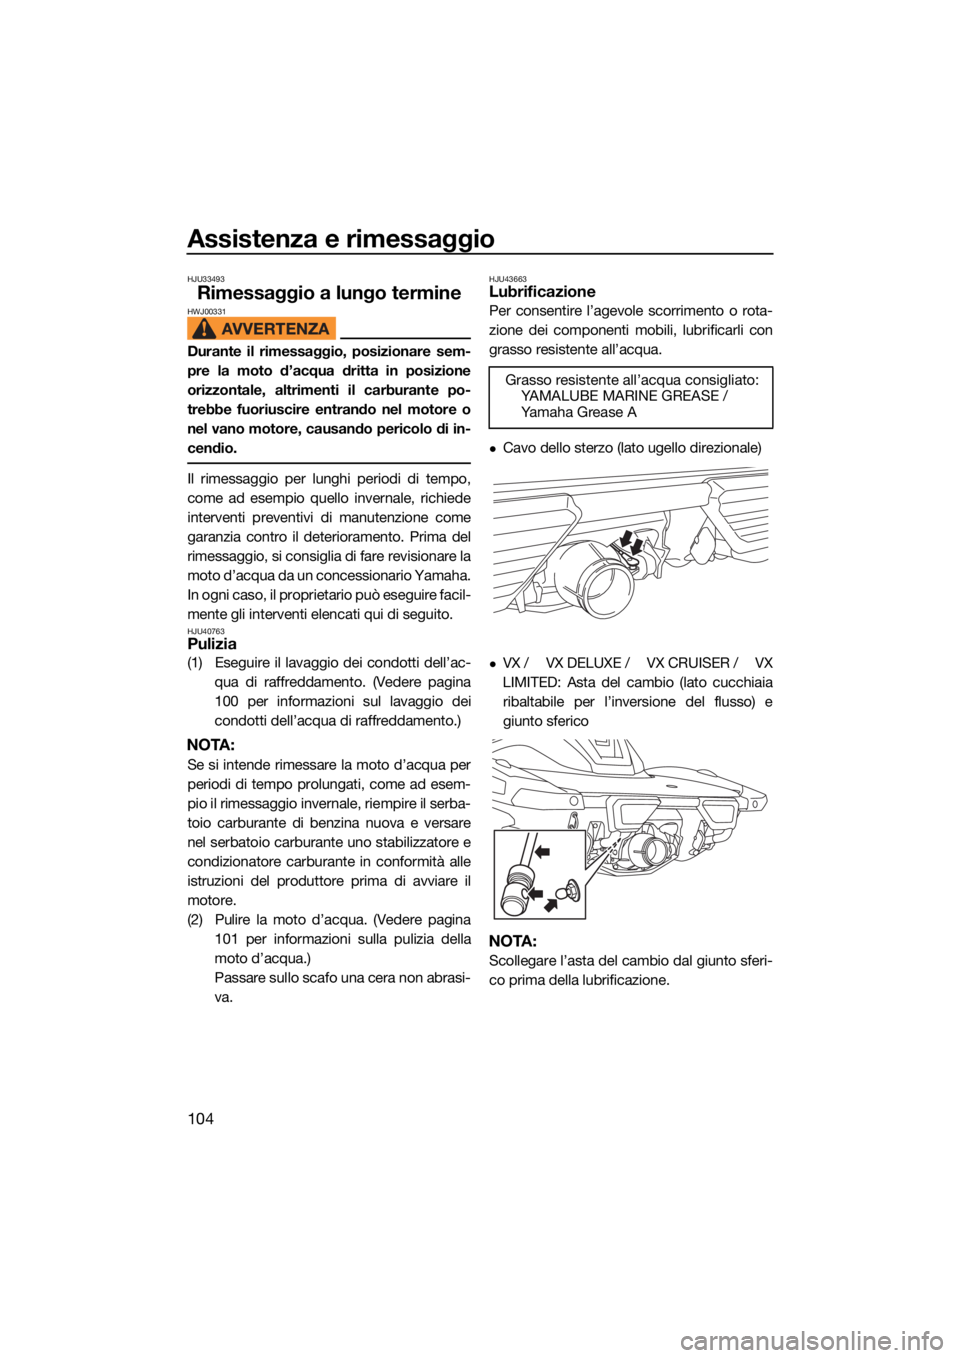 YAMAHA VX 2021  Manuale duso (in Italian) Assistenza e rimessaggio
104
HJU33493
Rimessaggio a lungo termineHWJ00331
Durante il rimessaggio, posizionare sem-
pre la moto d’acqua dritta in posizione
orizzontale, altrimenti il carburante po-
t